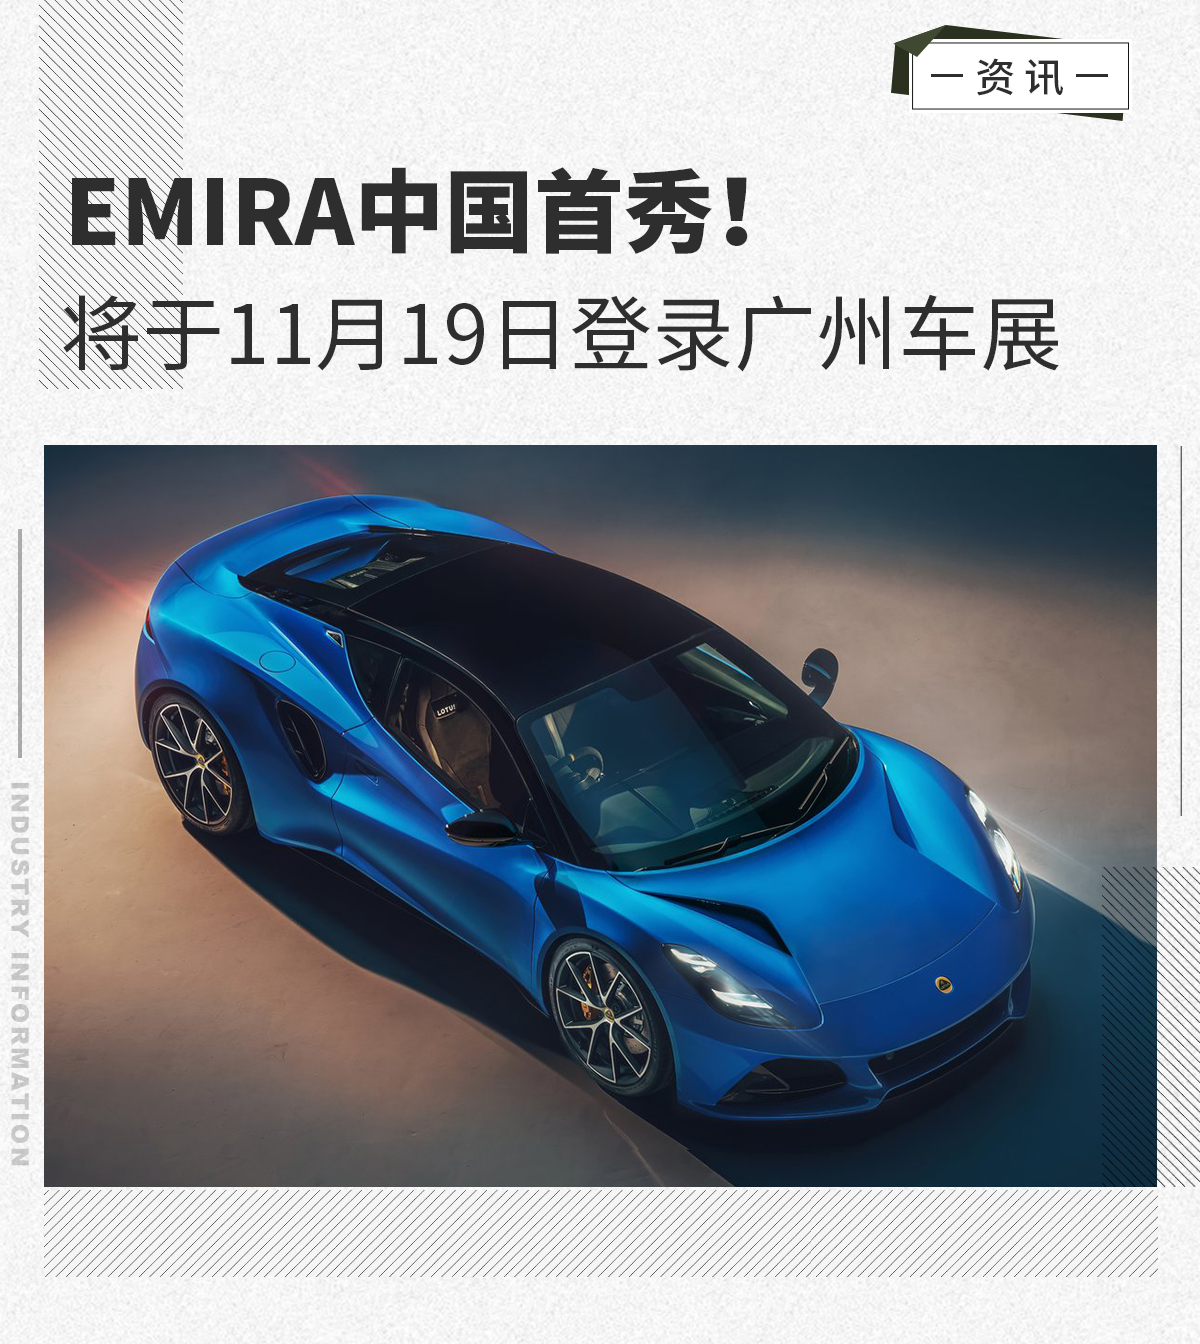 路特斯EMIRA中国首秀 将于11月19日登录广州车展